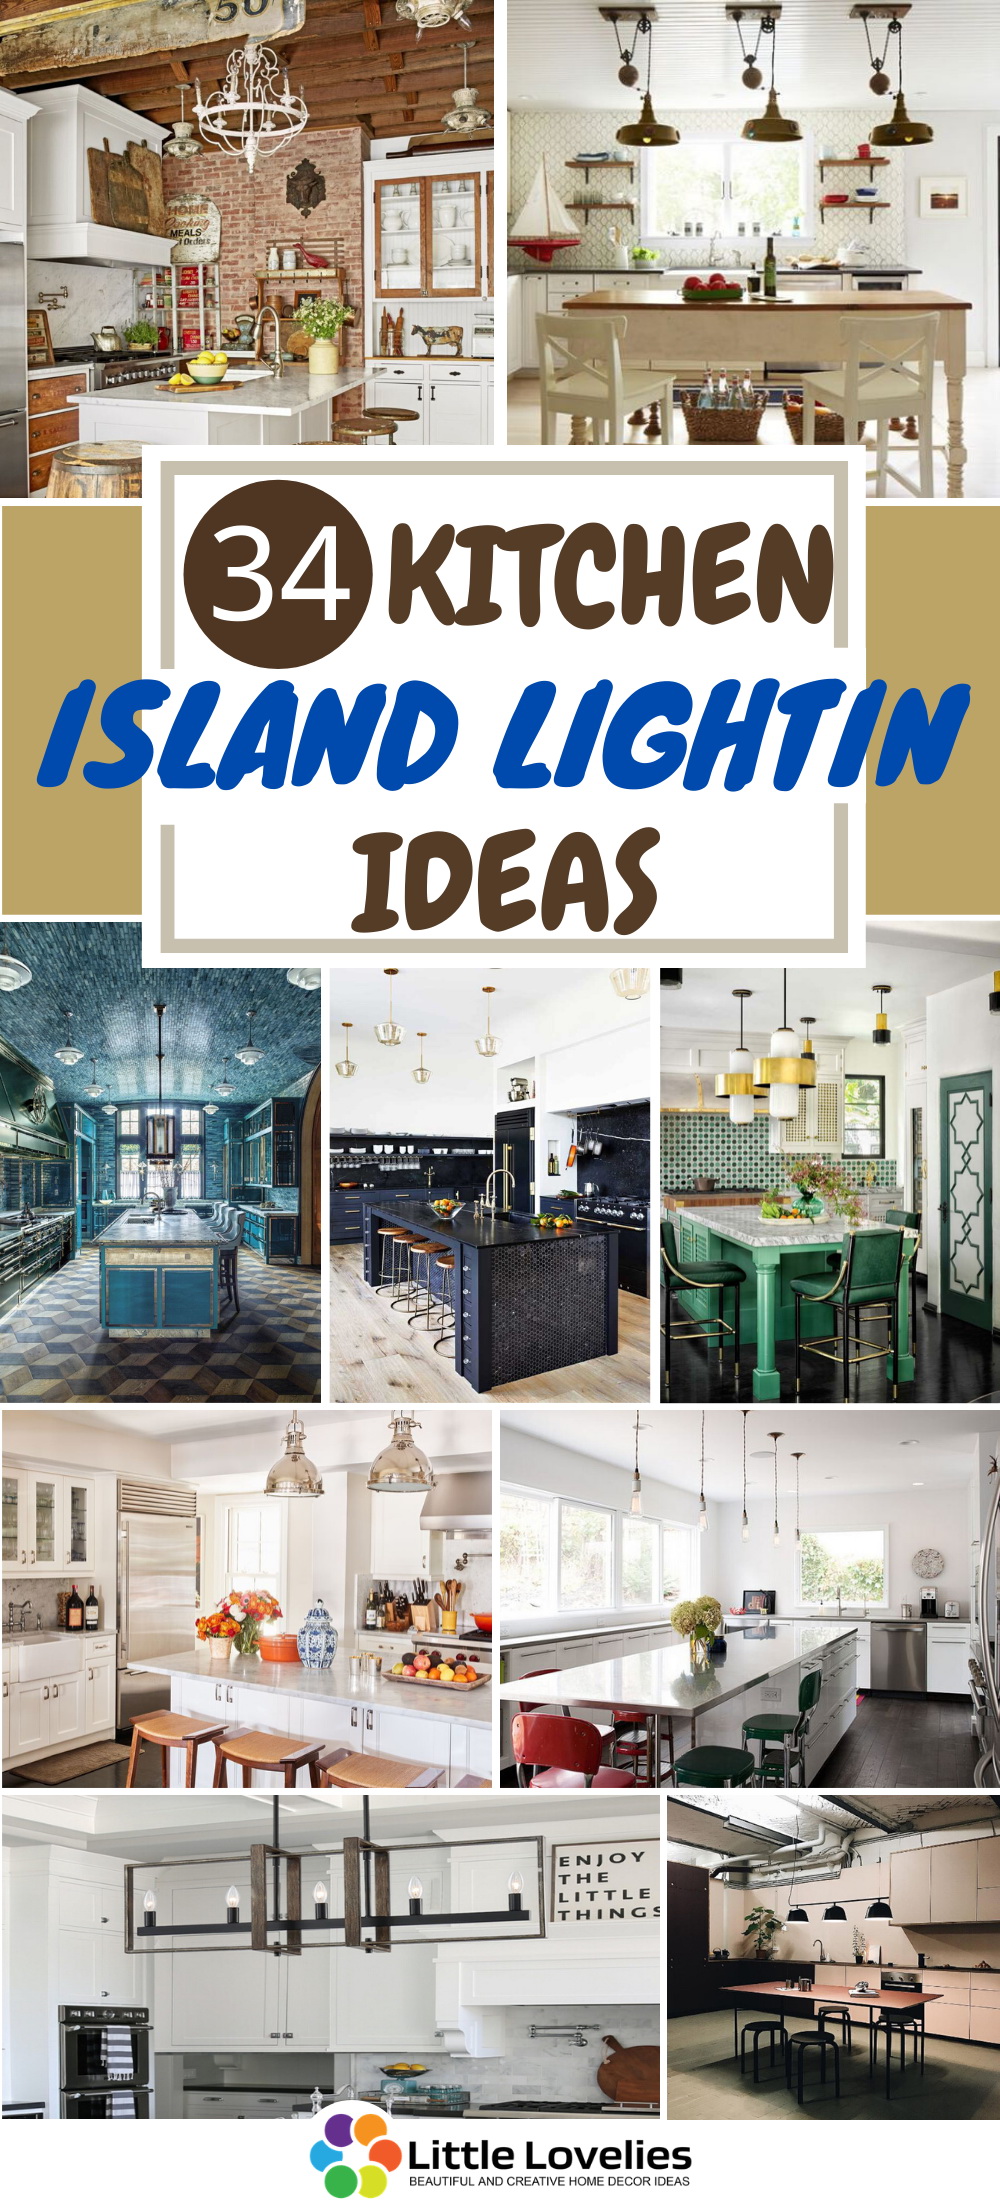 34 Kitchen Island Lighting Ideas That, Kitchen Island Lighting Ideas Uk